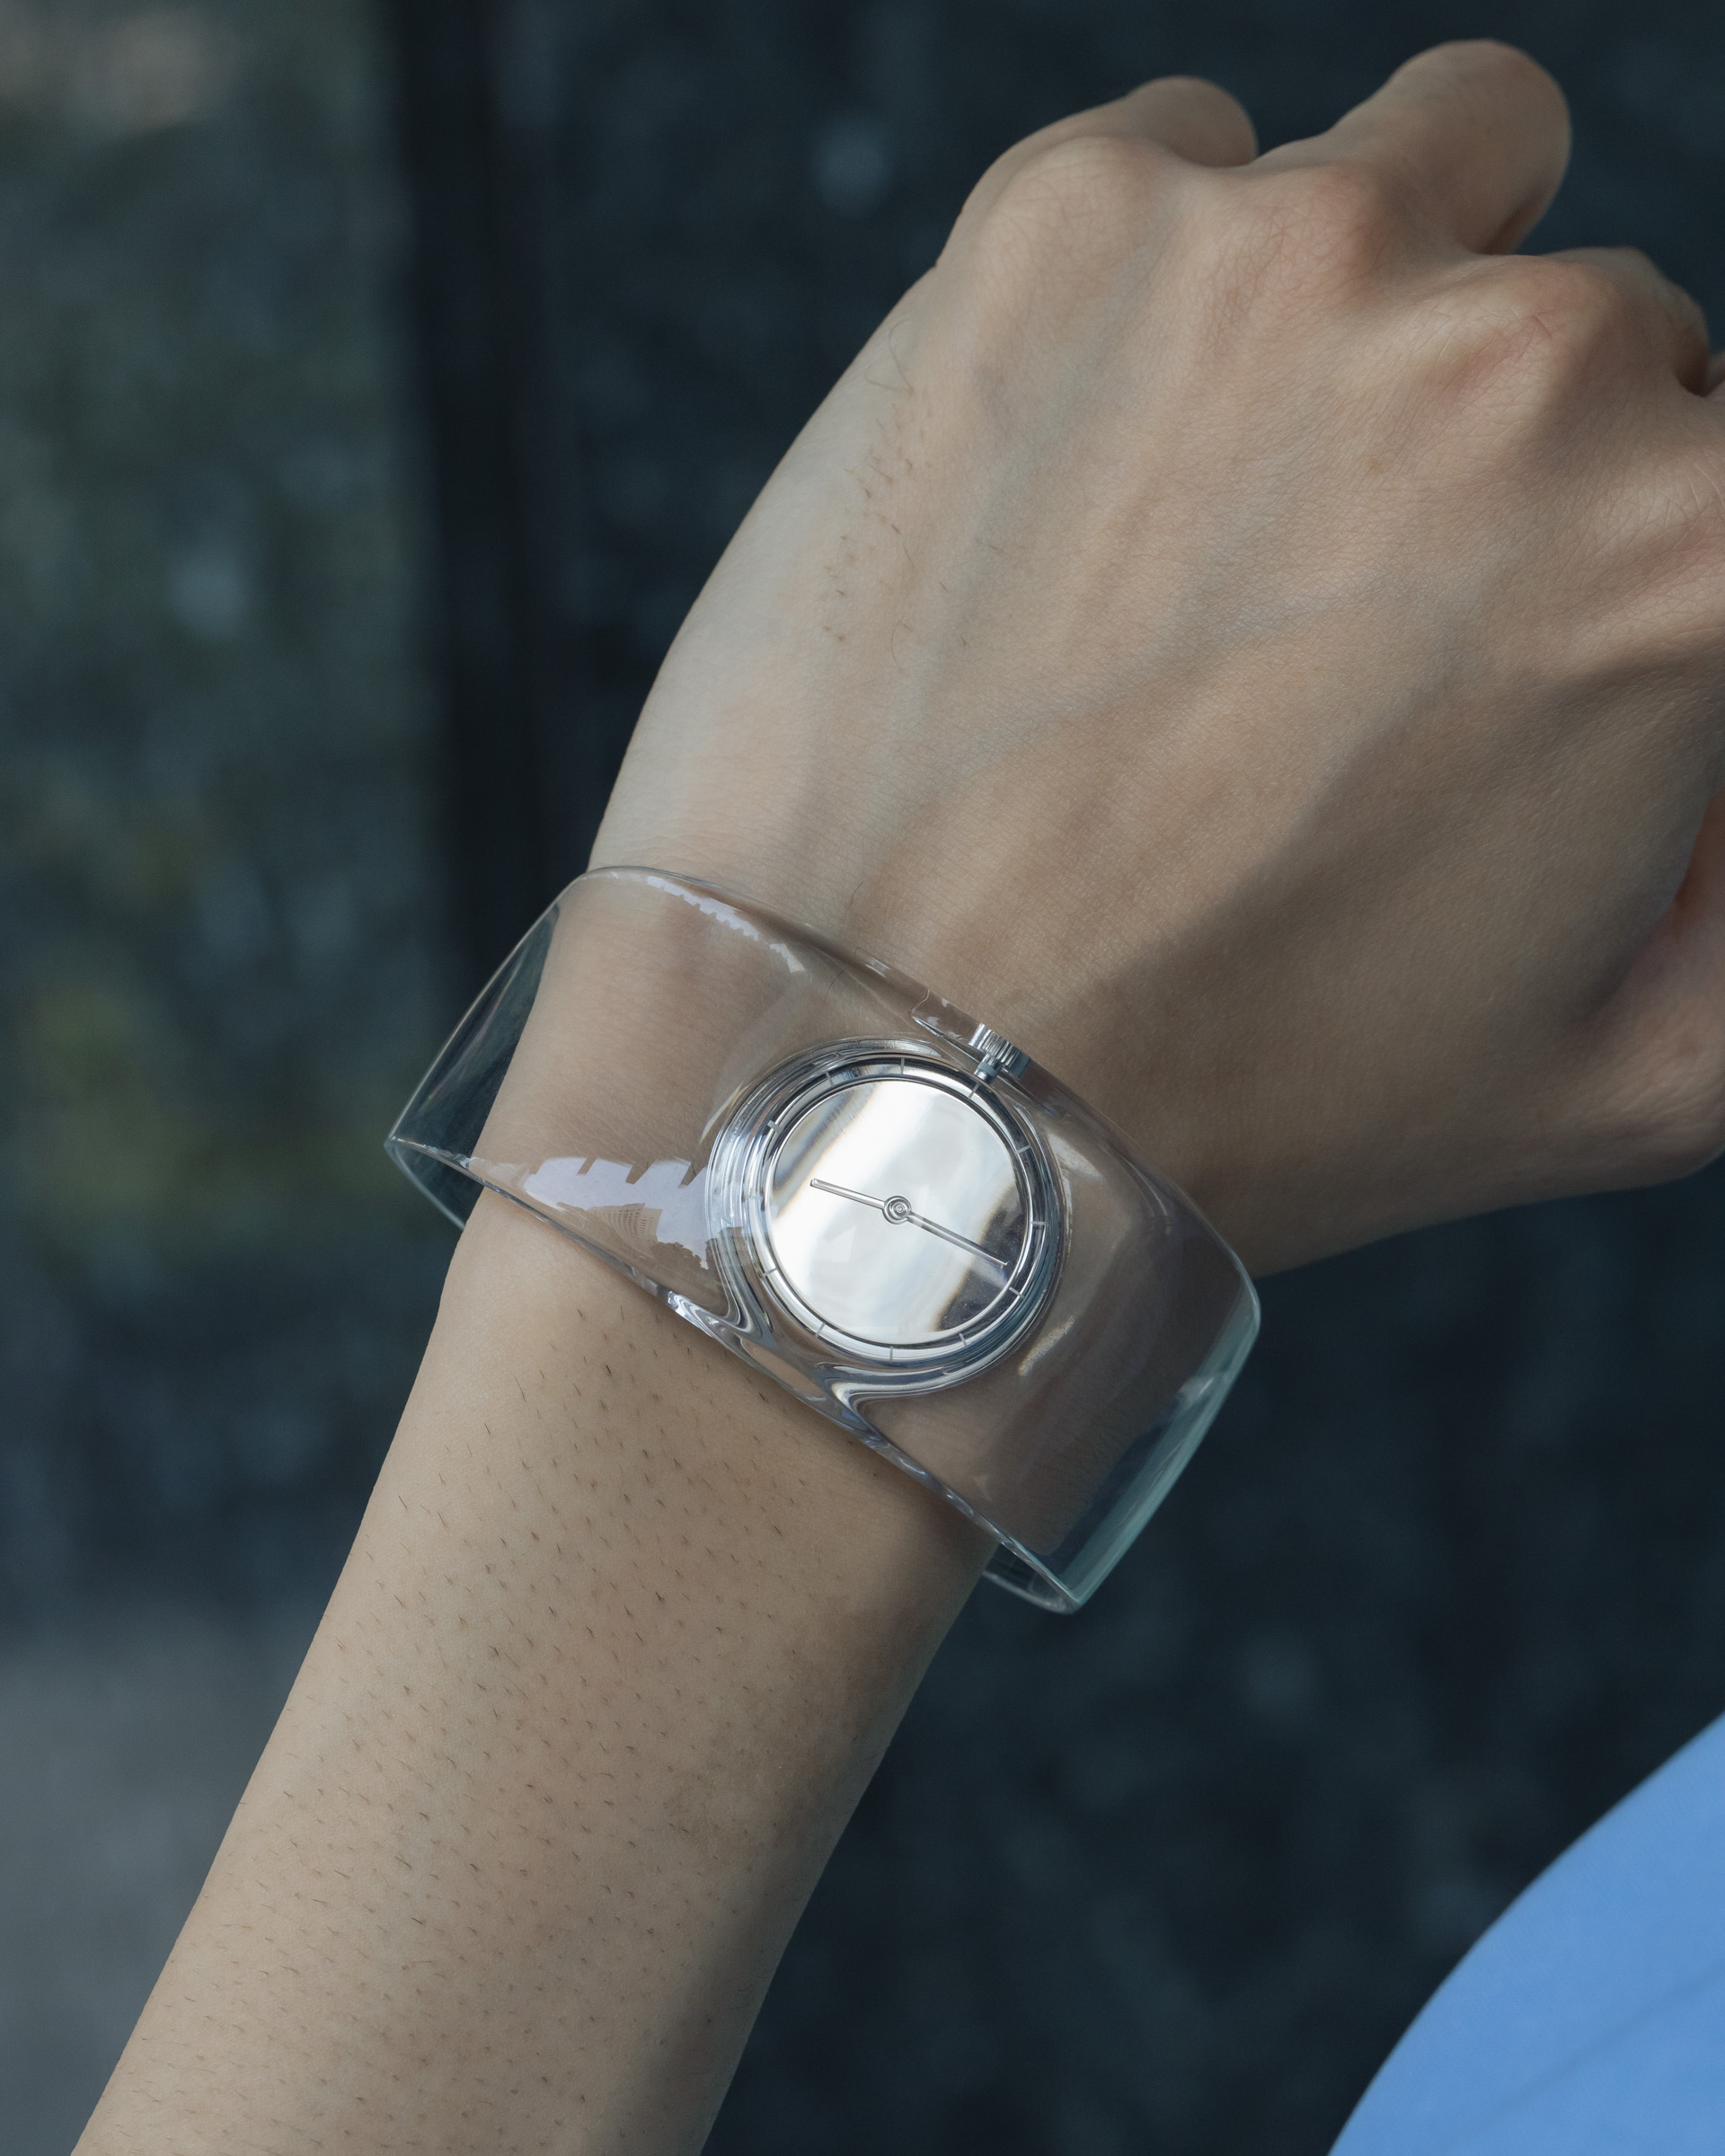 イッセイ ミヤケ ウオッチ「O」、透明な時計で作るサマースタイル